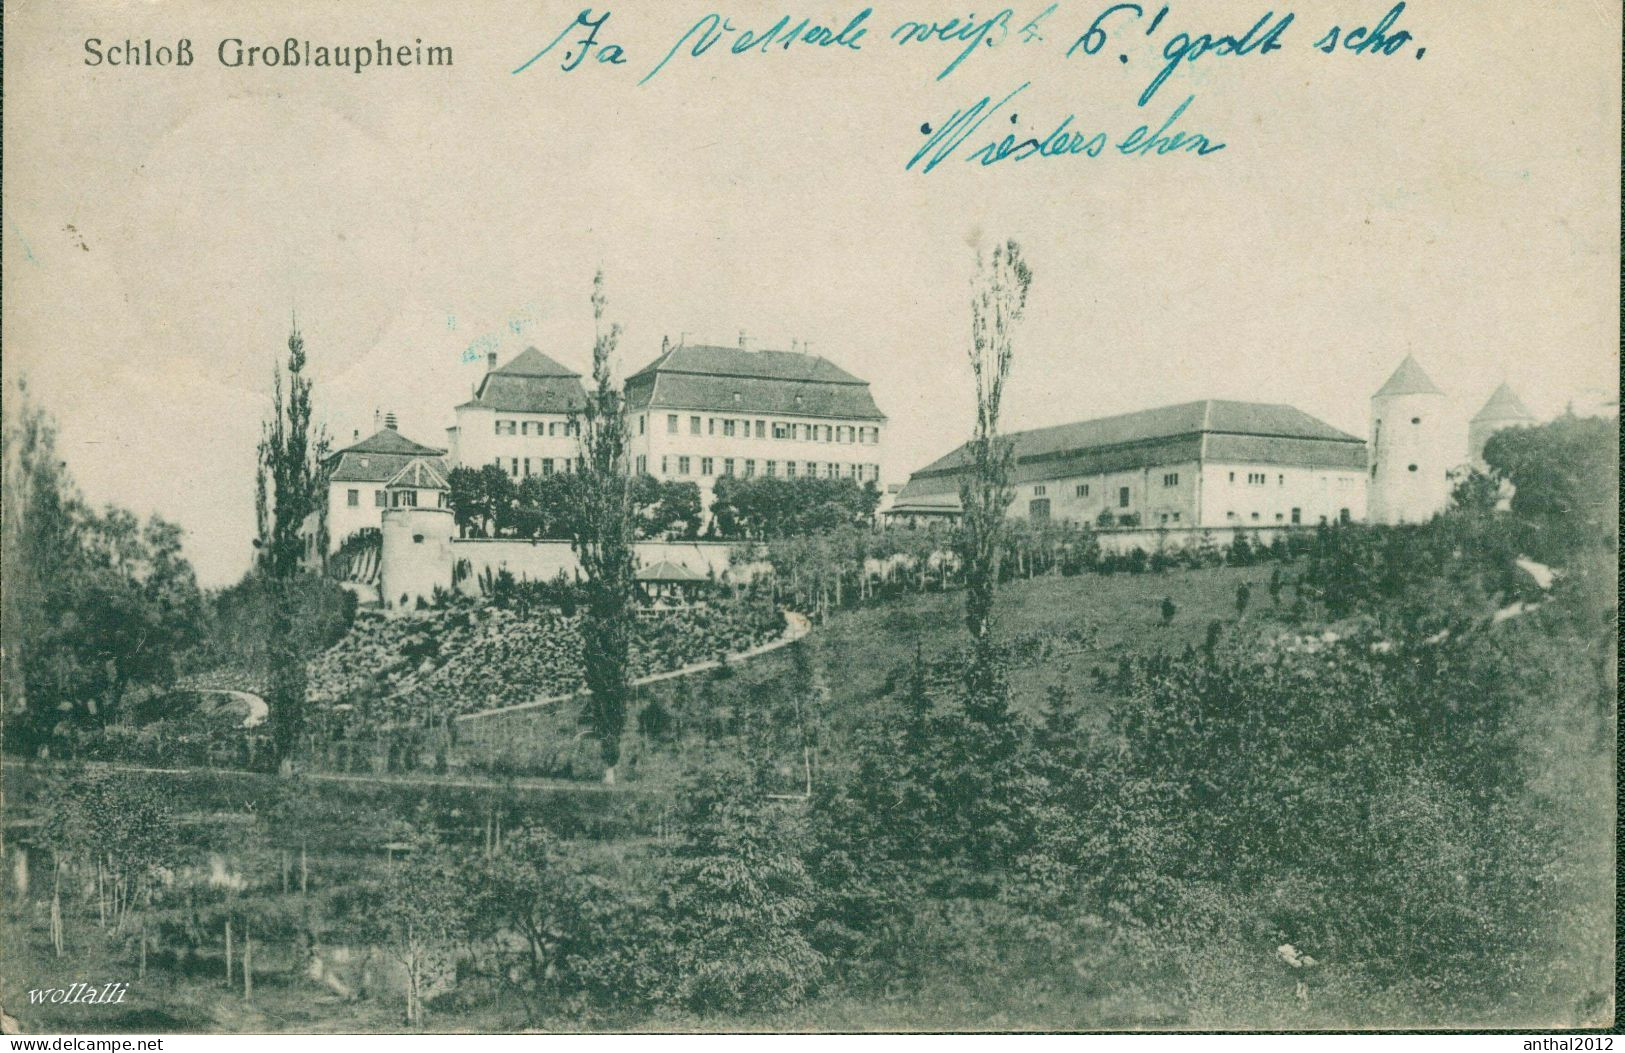 Superrar Litho Schloß Großlaupheim Laupheim Kr. Biberach Feldpost 17.10.1918 Verlag C. Müller 1918 Nr. 27128 - Biberach